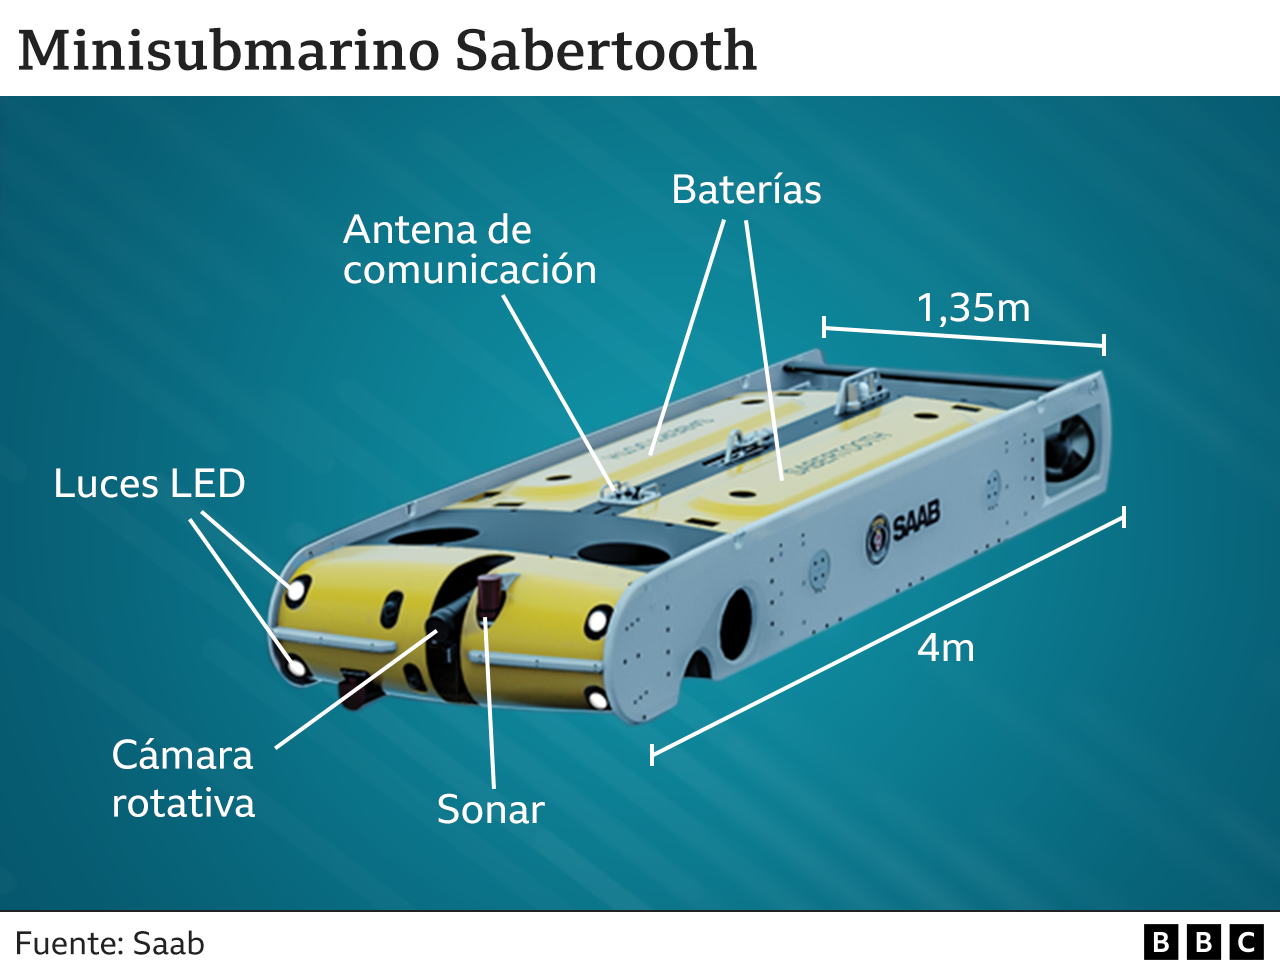 Minisubmarino